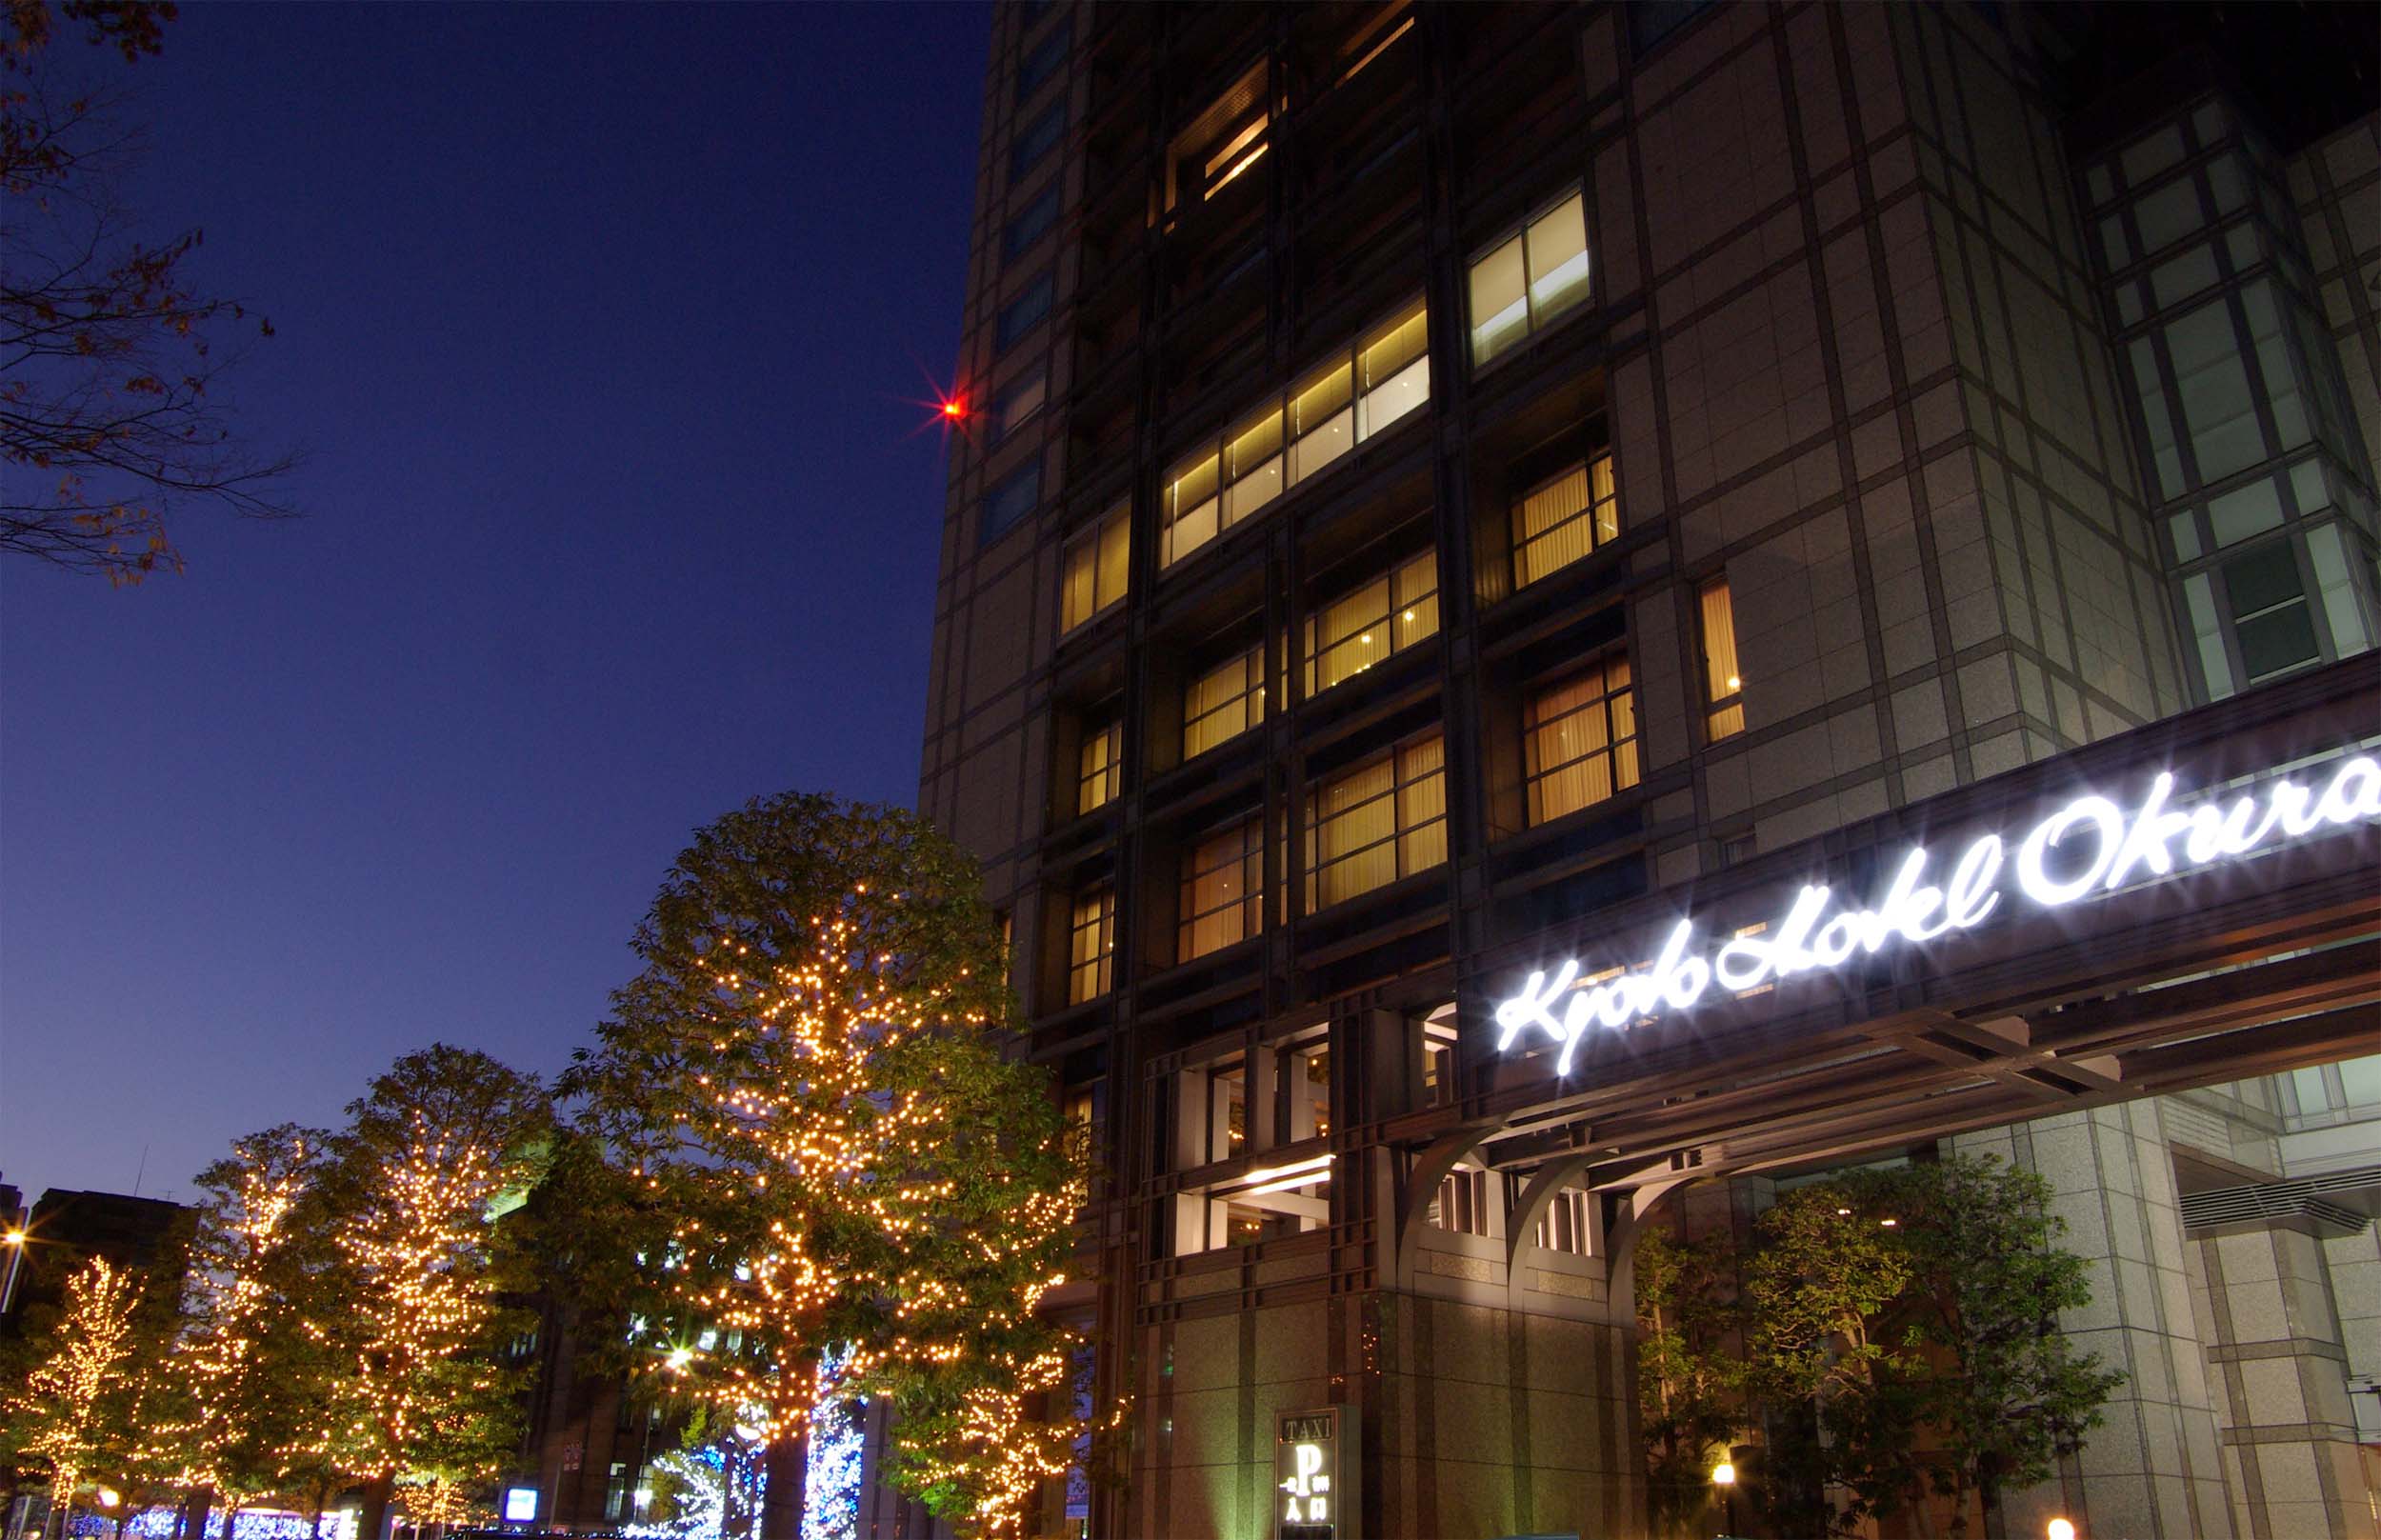 京都ホテルオークラ ホテルで味わうとっておきのクリスマス クリスマスディナー イルミネーションのご案内 オークラ ホテルズ リゾーツのプレスリリース